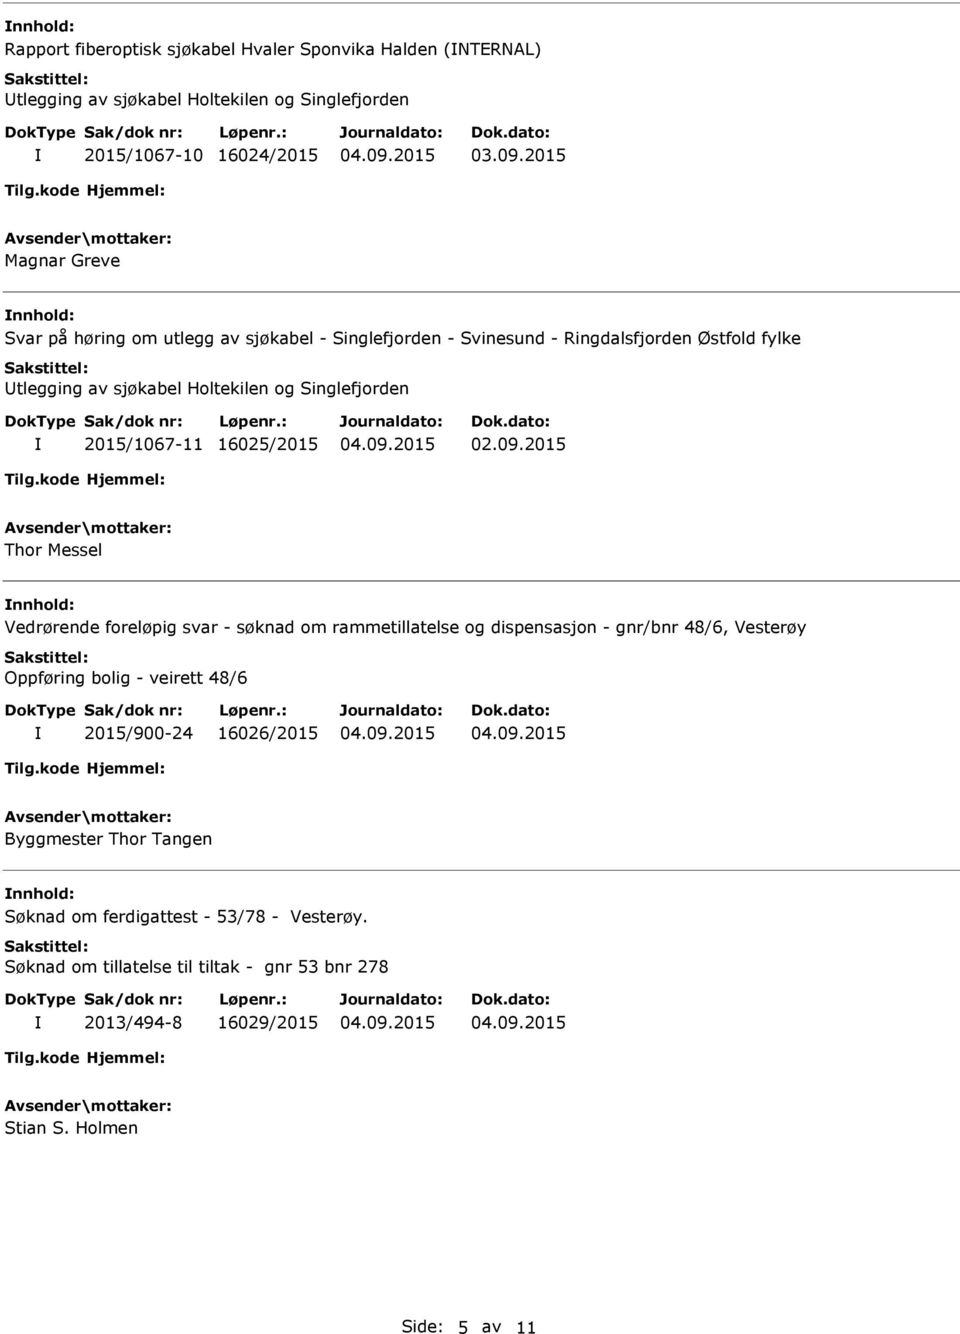 2015 Thor Messel Vedrørende foreløpig svar - søknad om rammetillatelse og dispensasjon - gnr/bnr 48/6, Vesterøy Oppføring bolig - veirett 48/6 2015/900-24